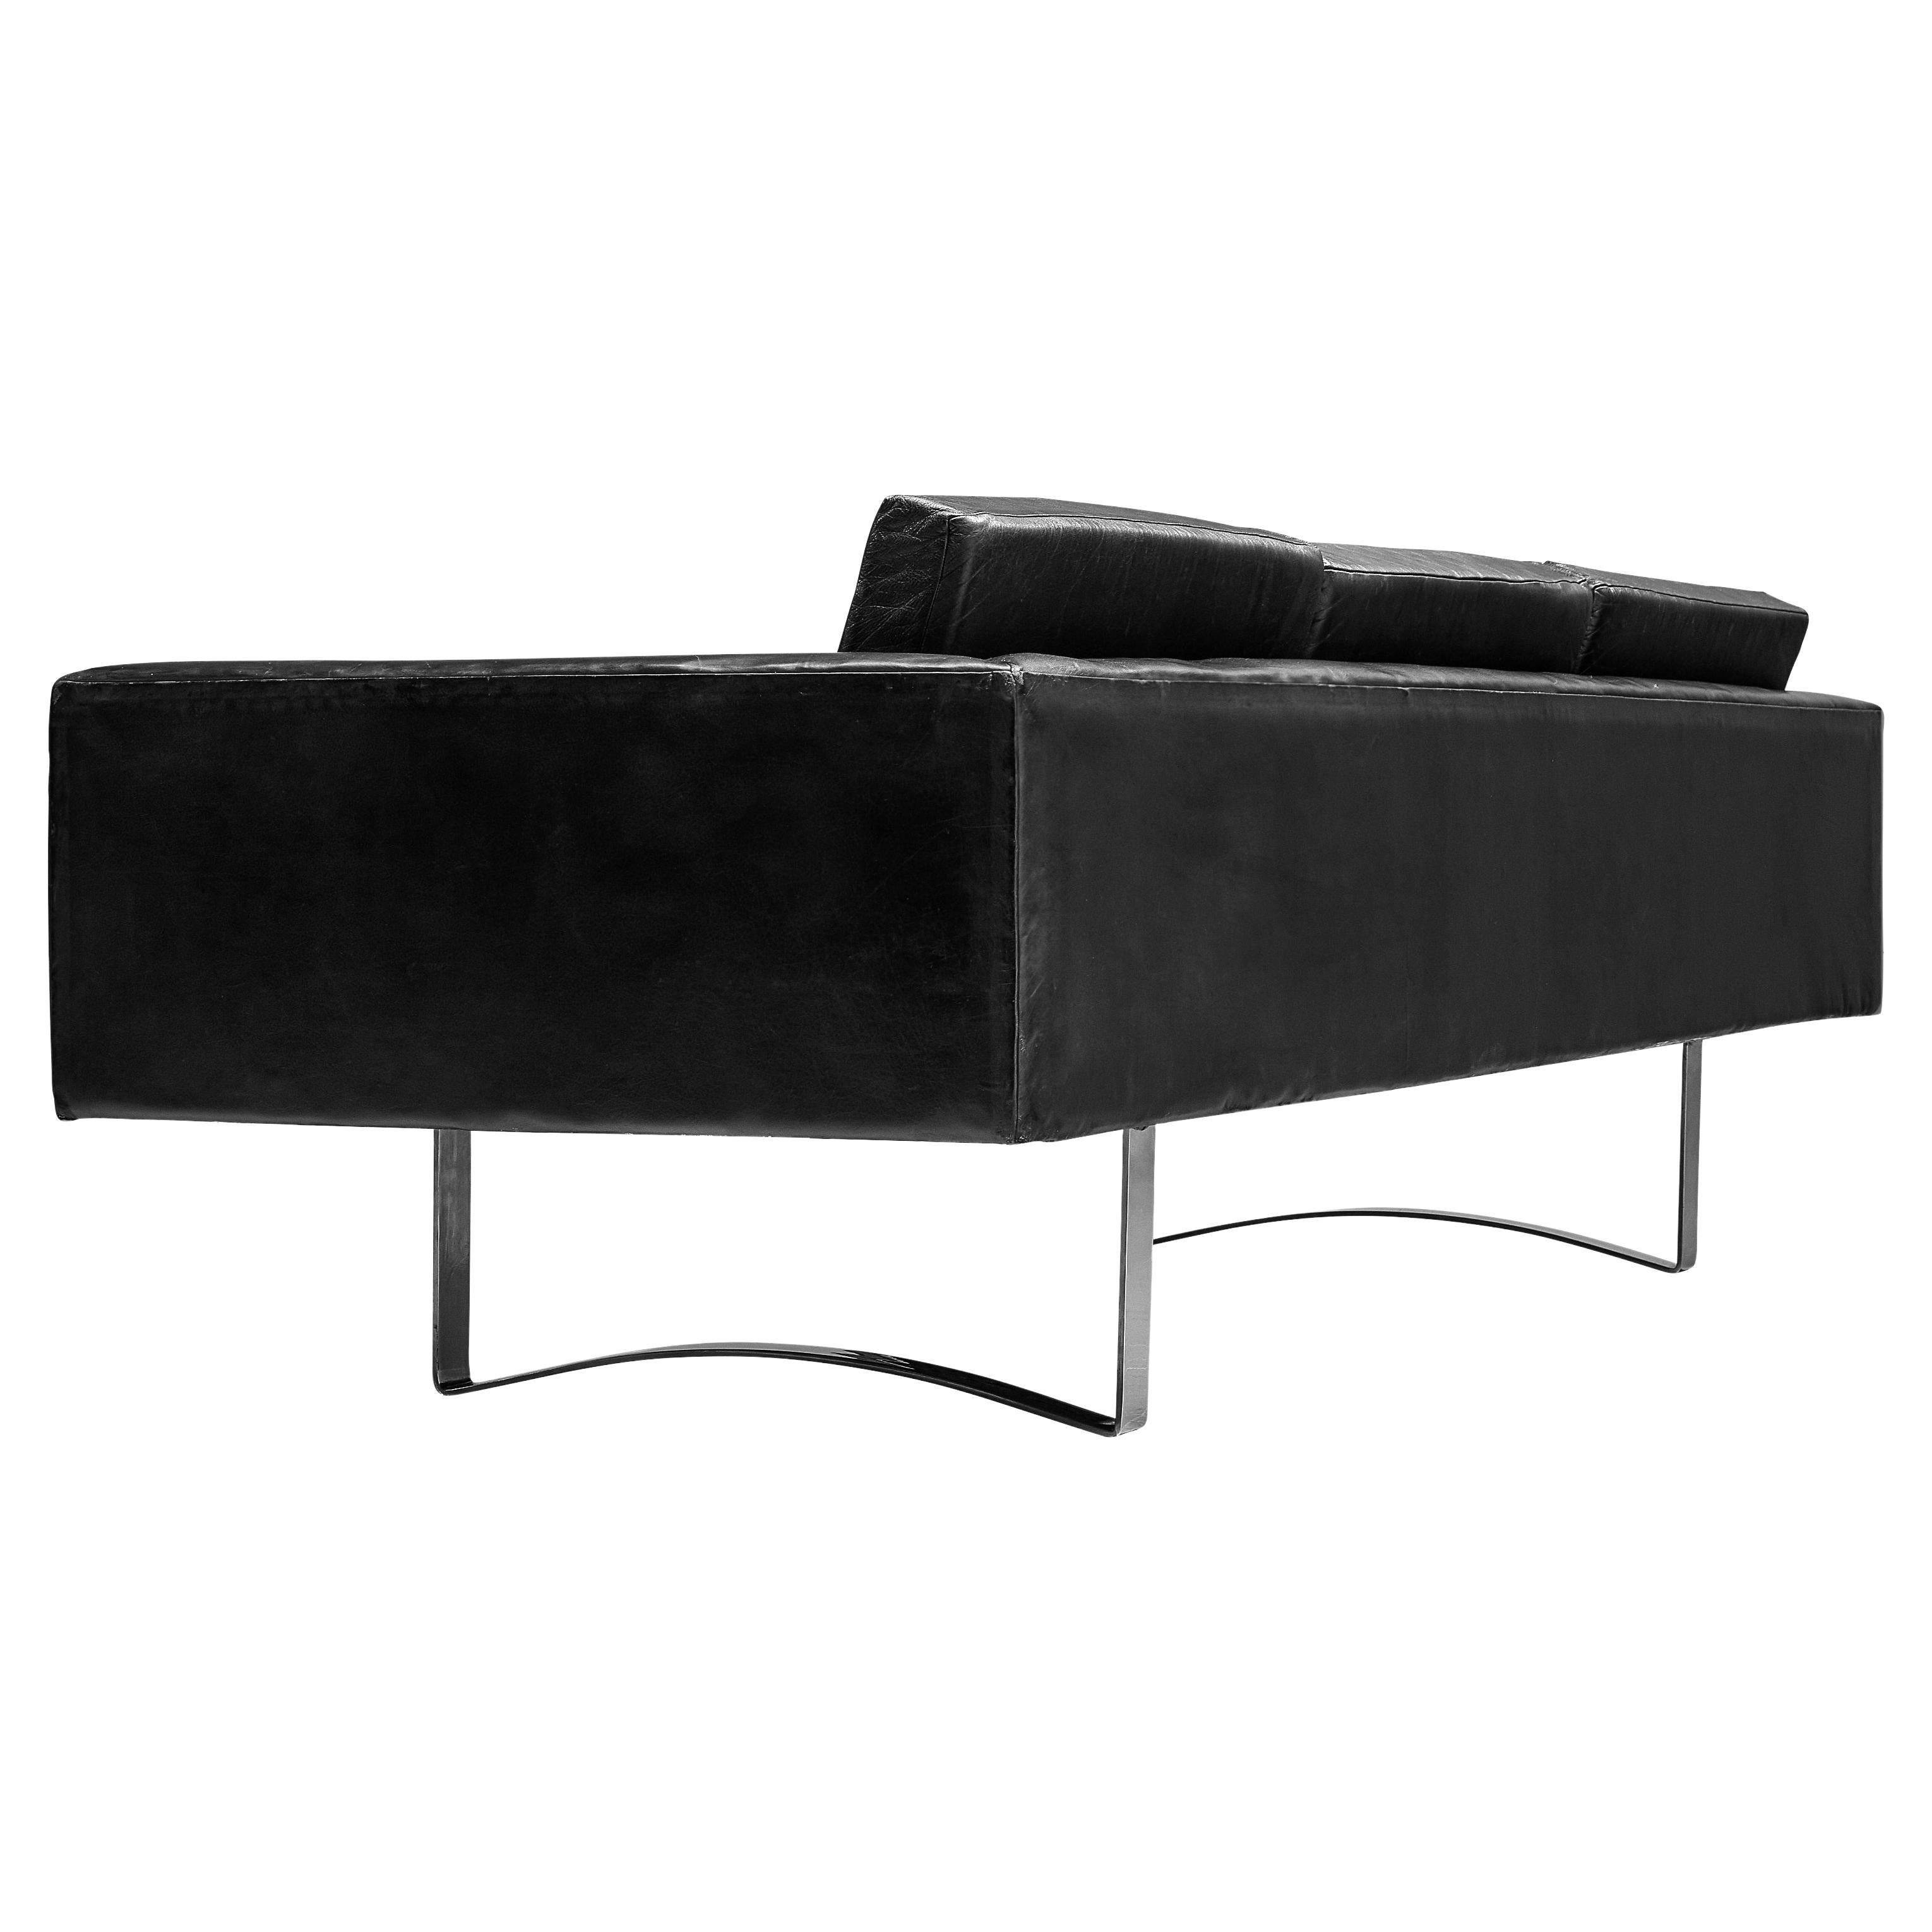 Bodil Kjaer Sofa aus schwarzem Leder und Stahl